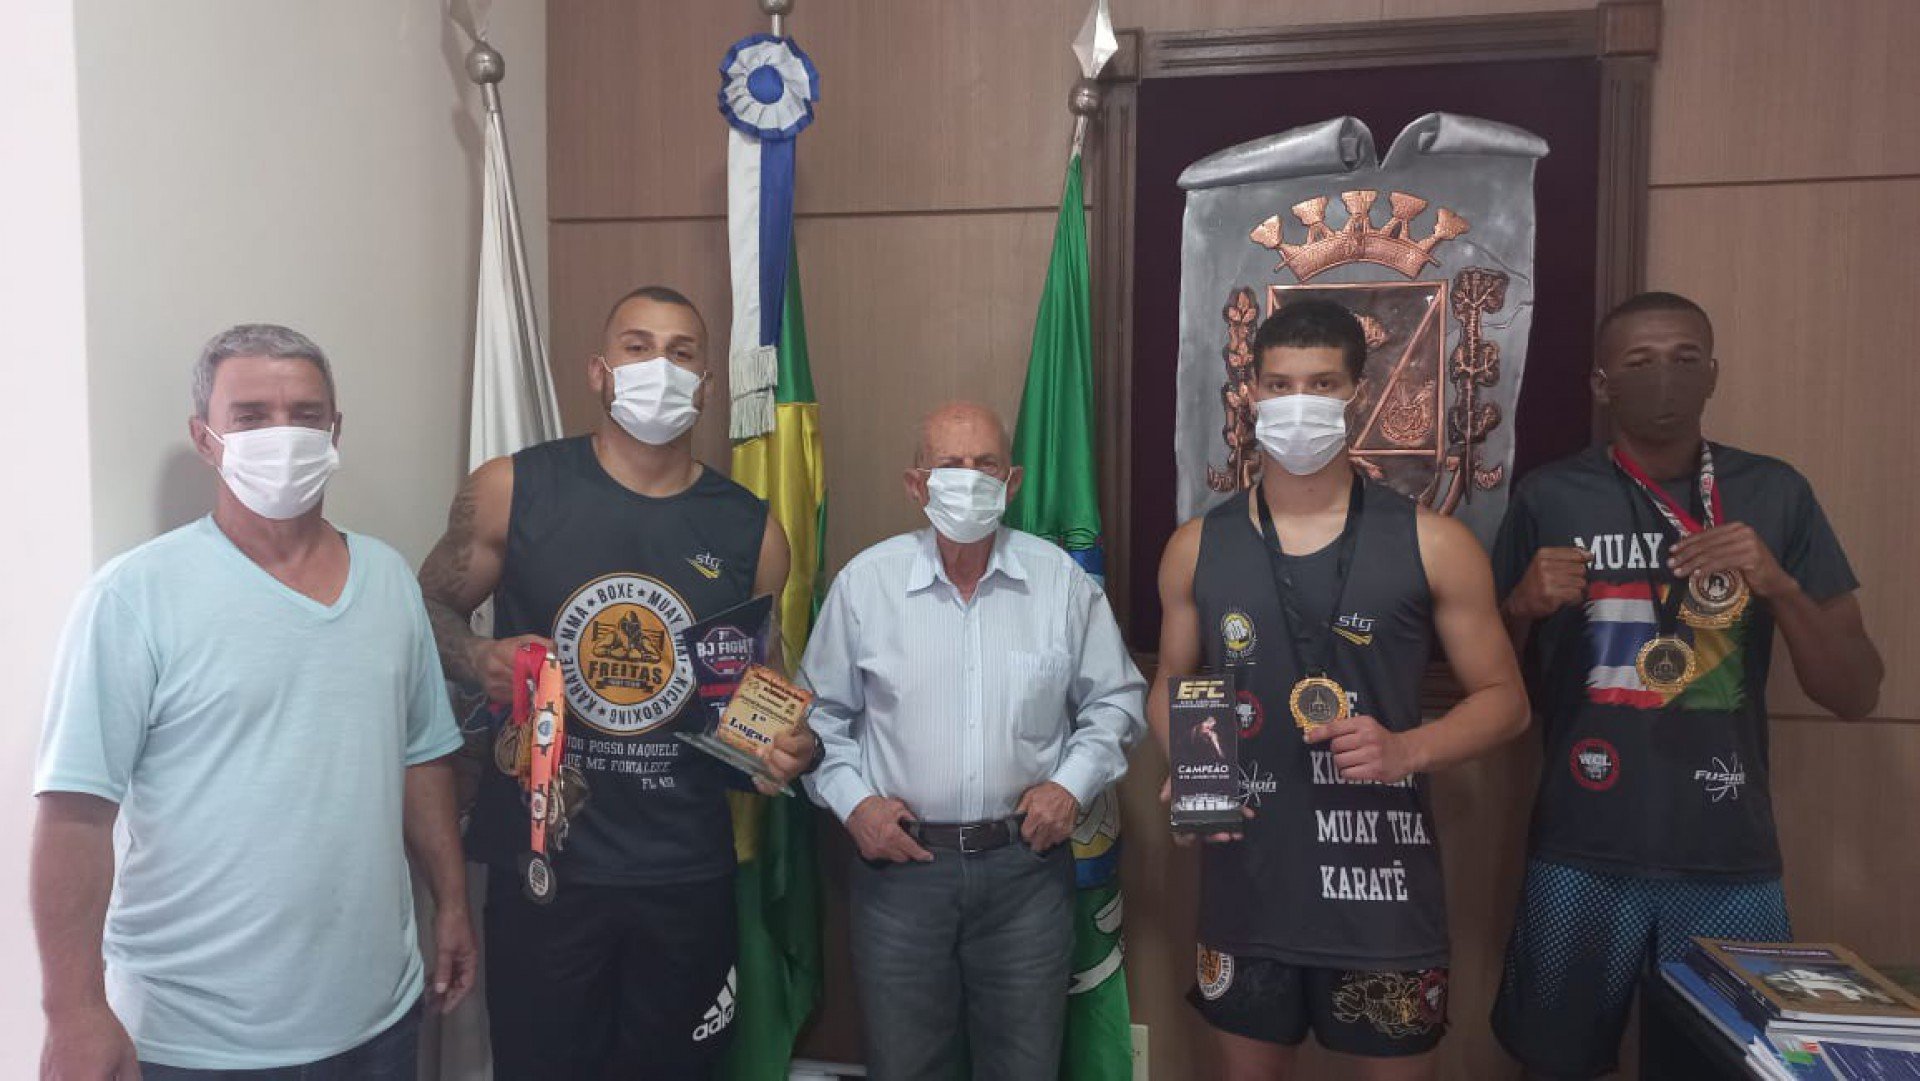 Atletas contaram com o apoio da Prefeitura, por meio da Secretaria Municipal de Esportes. - Divulgação/PMVS